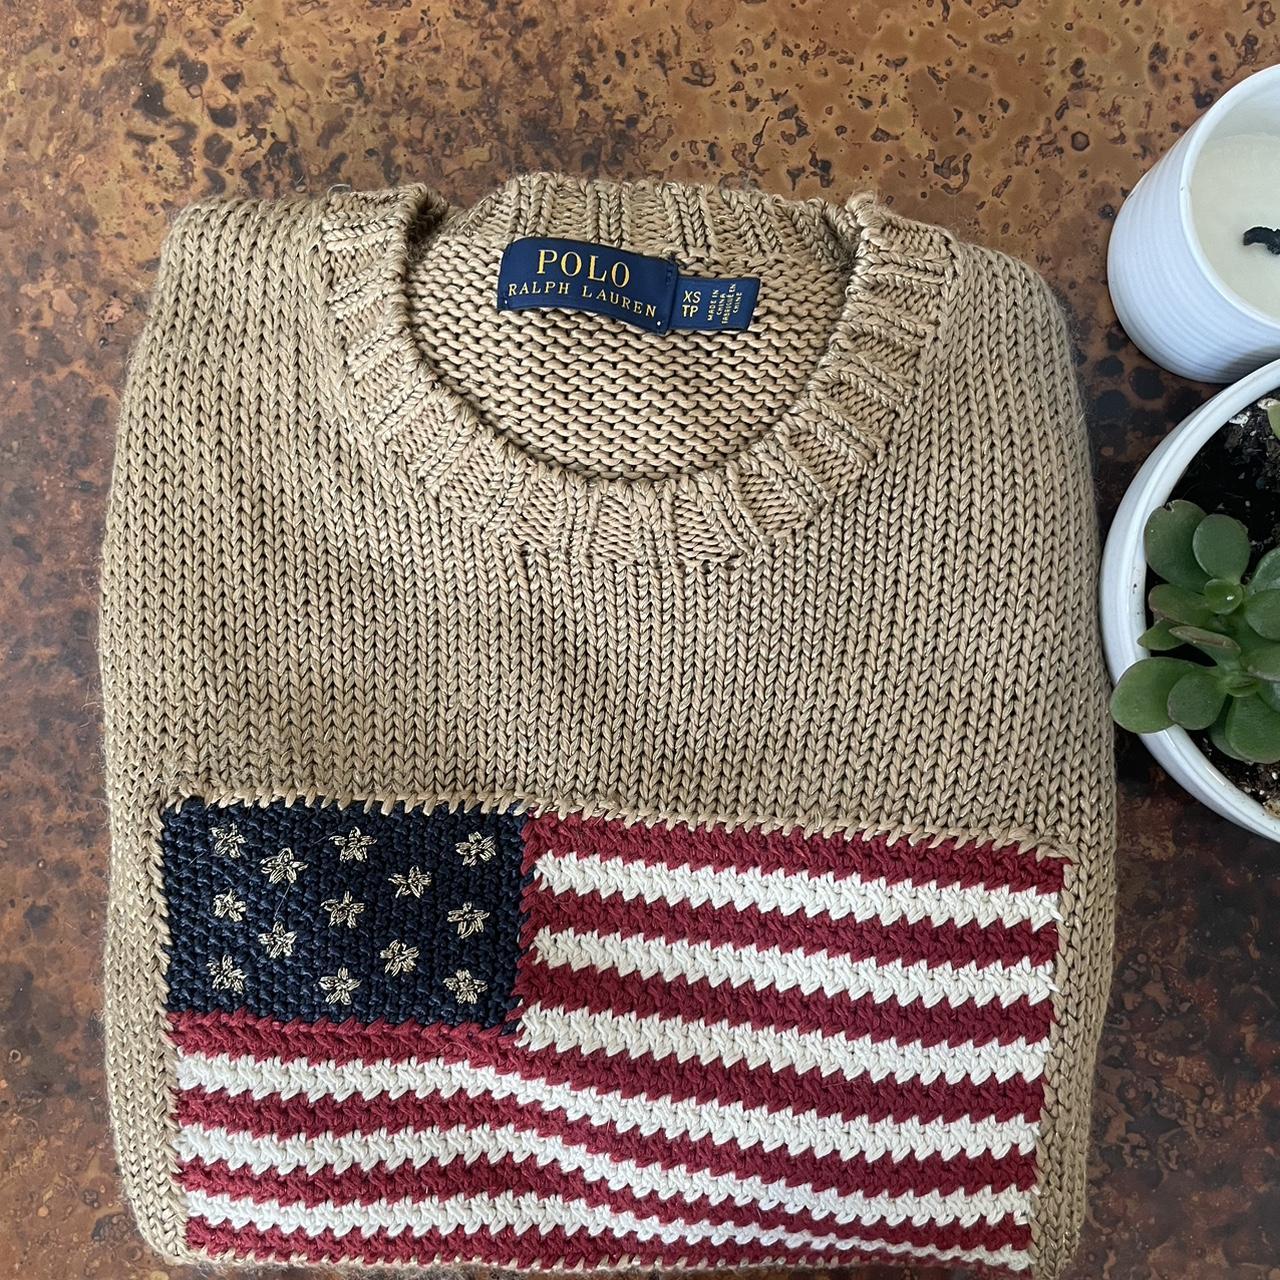 Polo Ralph Lauren gold American flag sweater 🇺🇸🧸 Xs,... - Depop